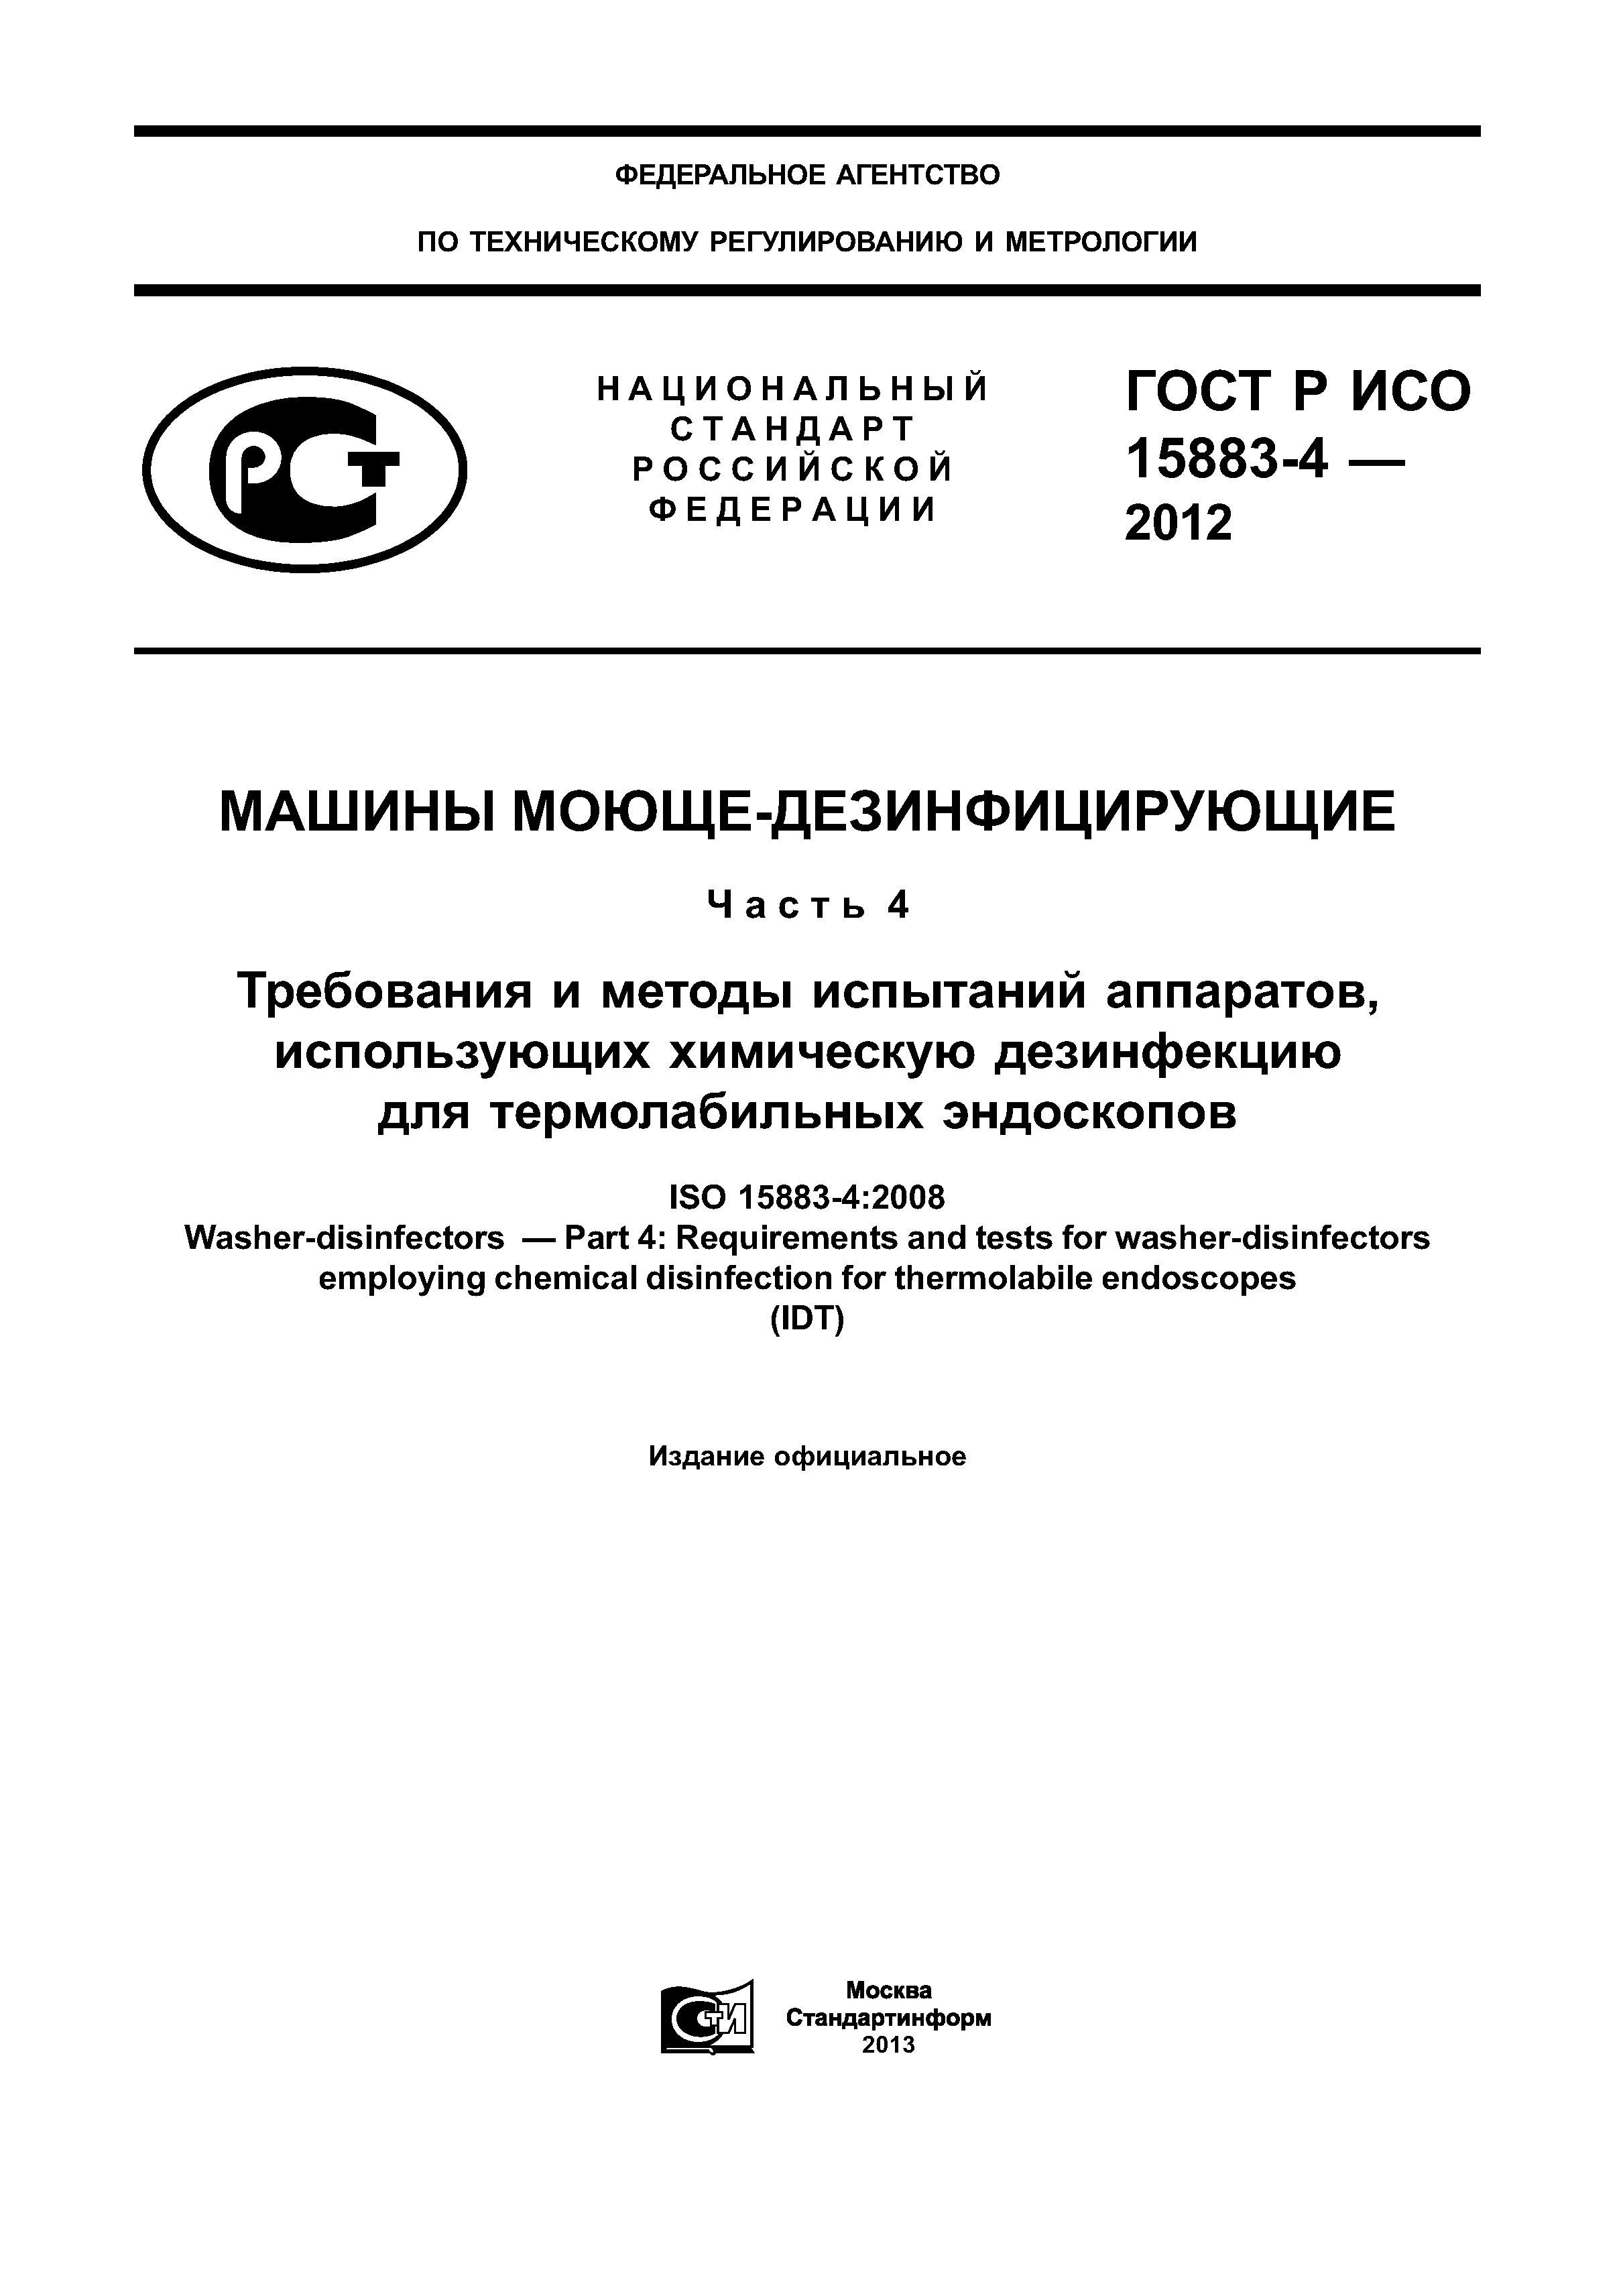 ГОСТ Р ИСО 15883-4-2012